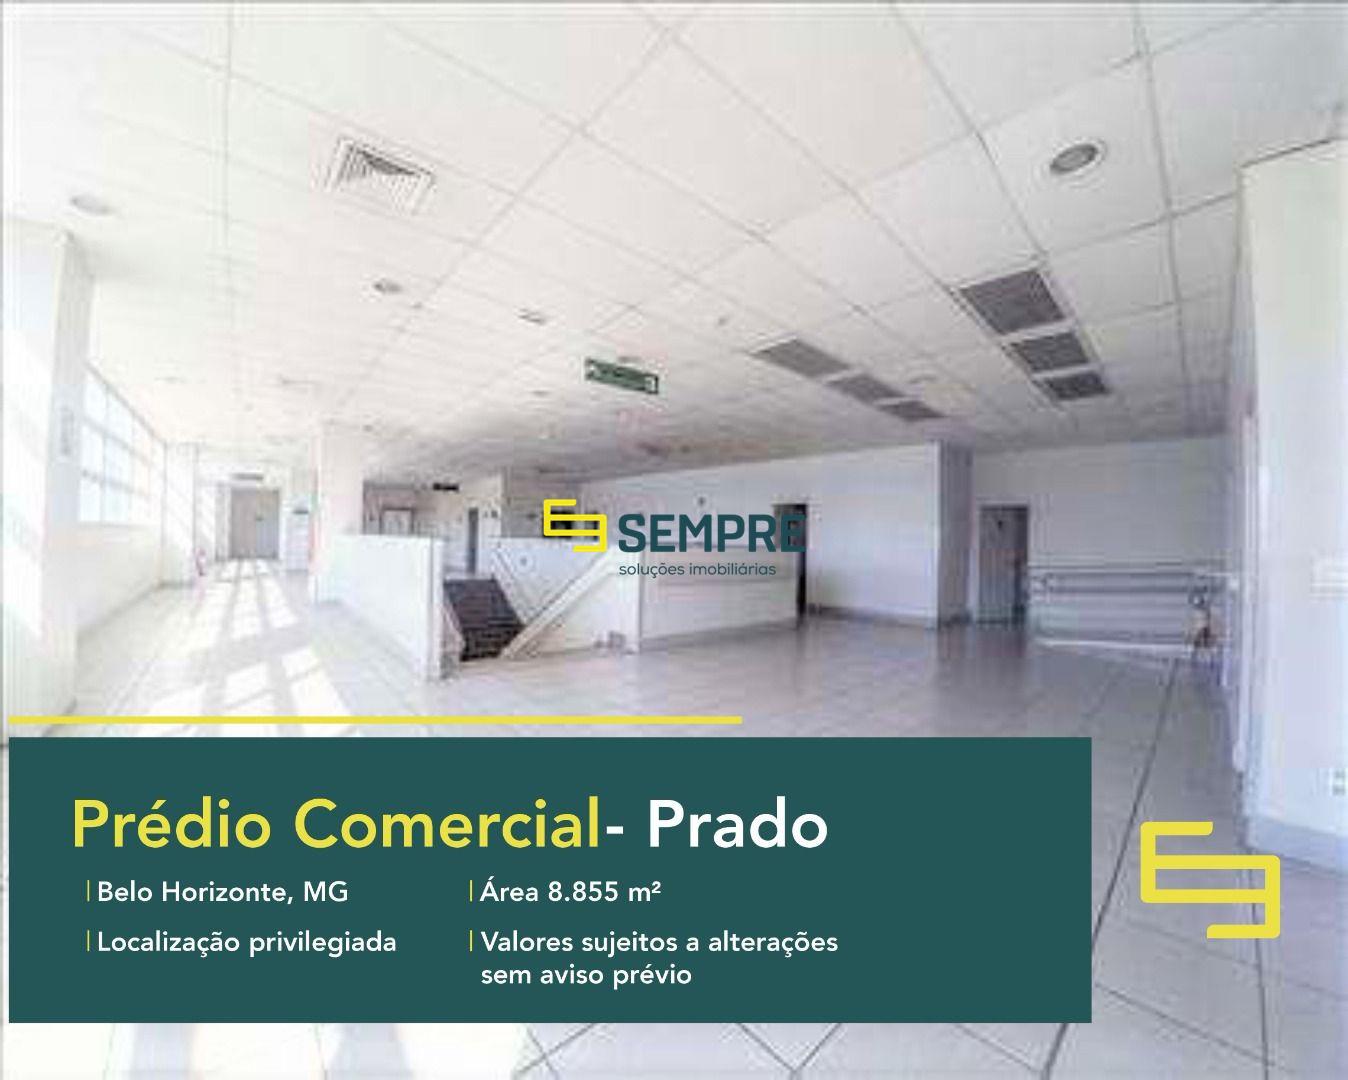 Prédio comercial para alugar no Prado - Belo Horizonte. Este prédio comercial de salas comerciais para locação/ lajes corporativas.